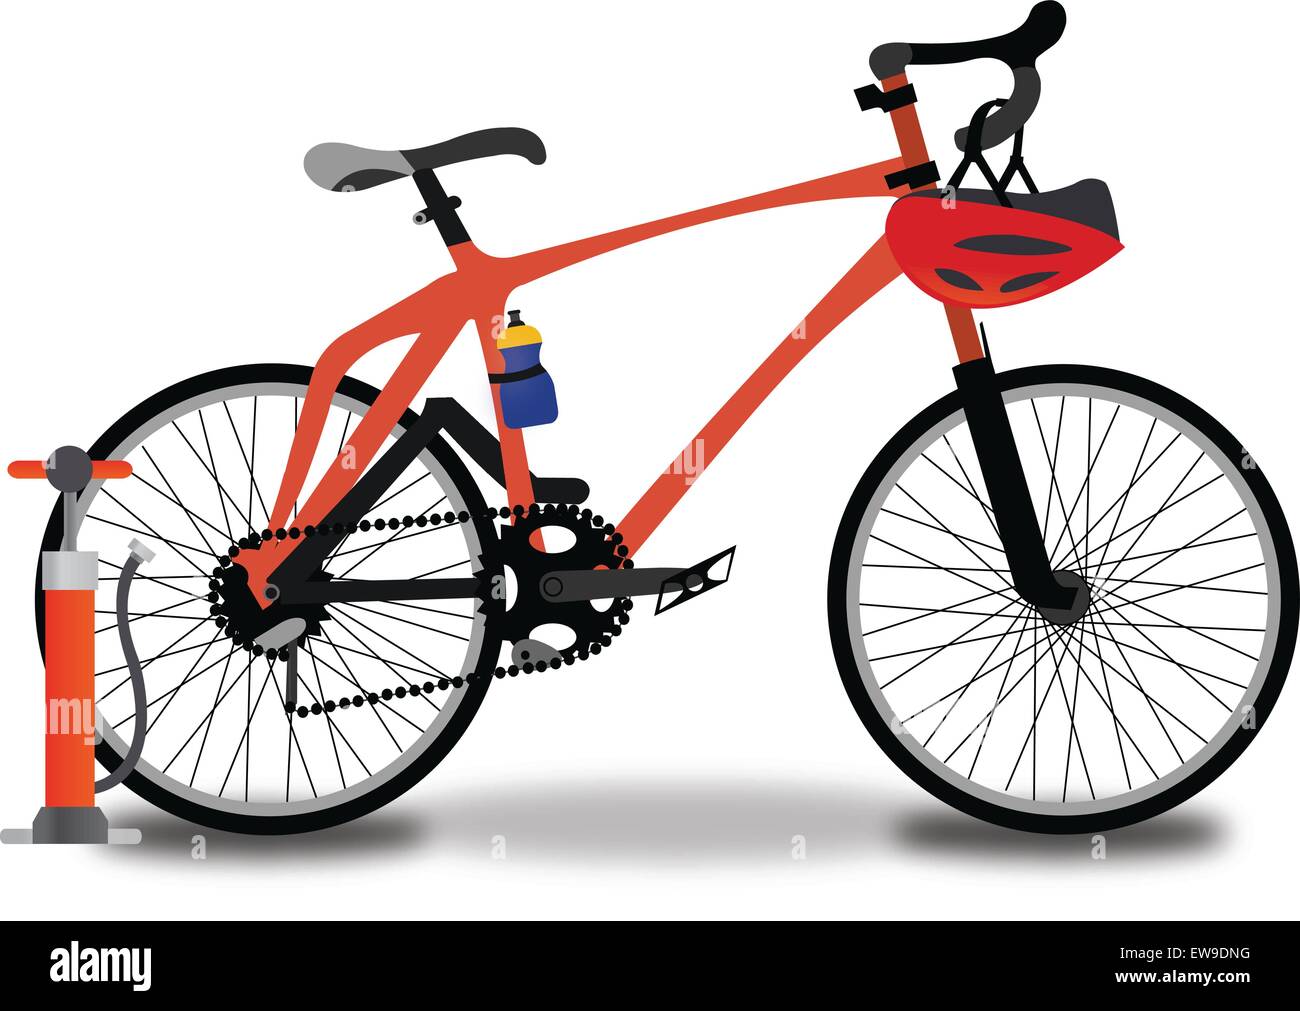 Rennen, Fahrrad, rot und schwarz, mit Reifen zu Pumpen, Helm und Trinkflasche, Vektor-illustration Stock Vektor